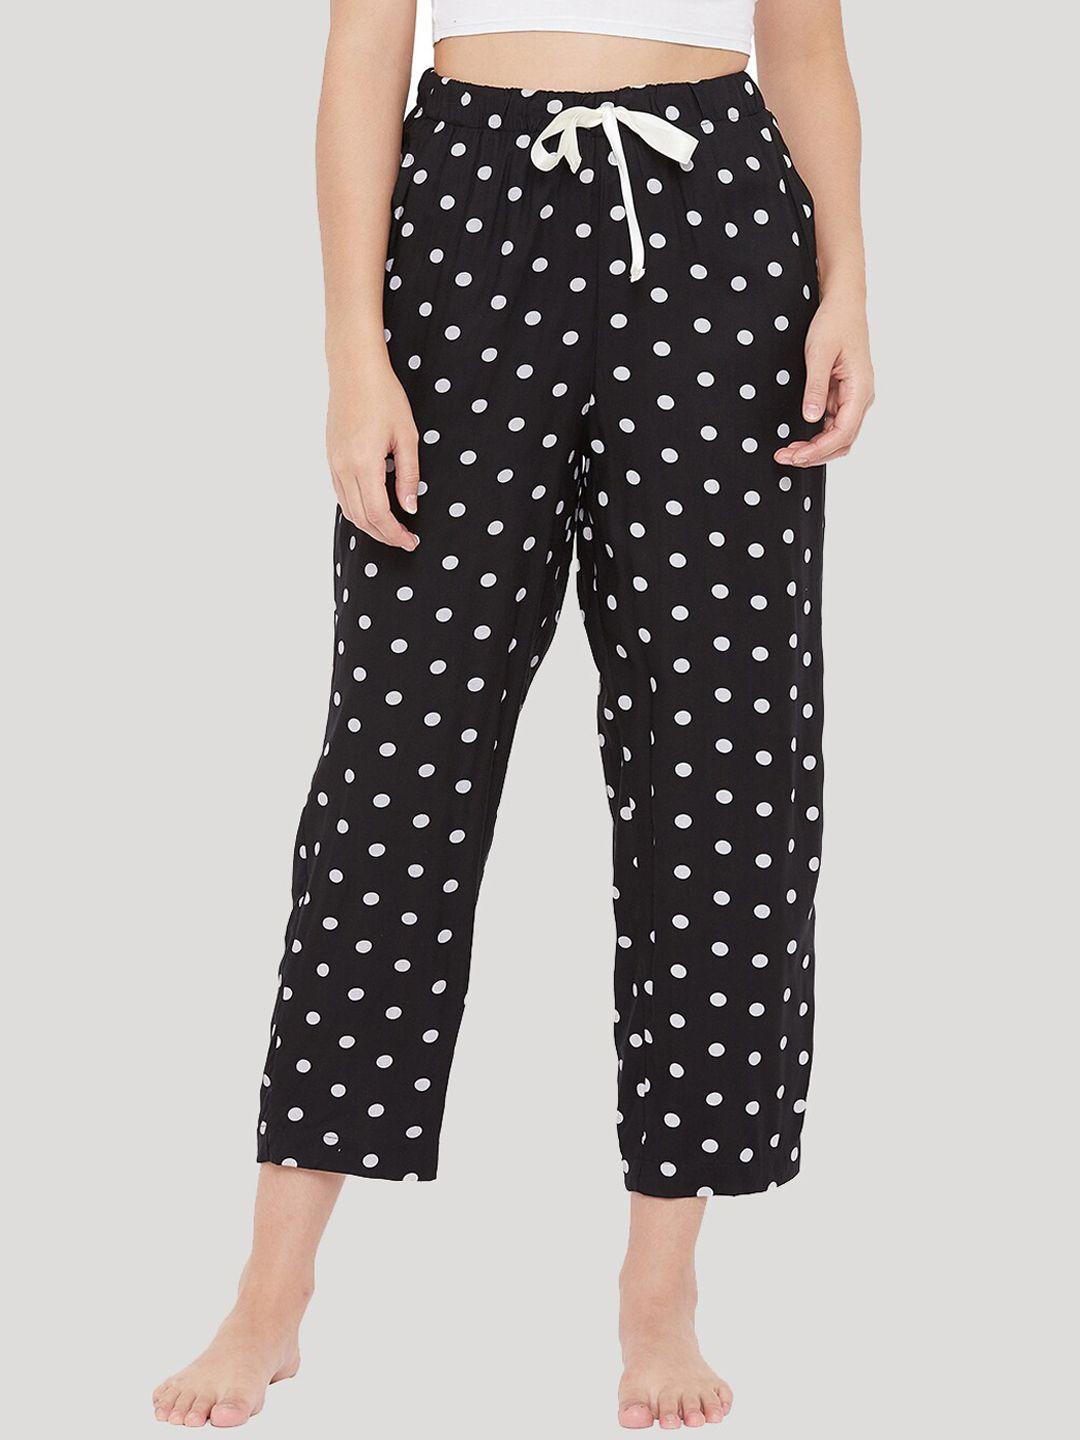 style shoes women black & white polka dot print lounge pants